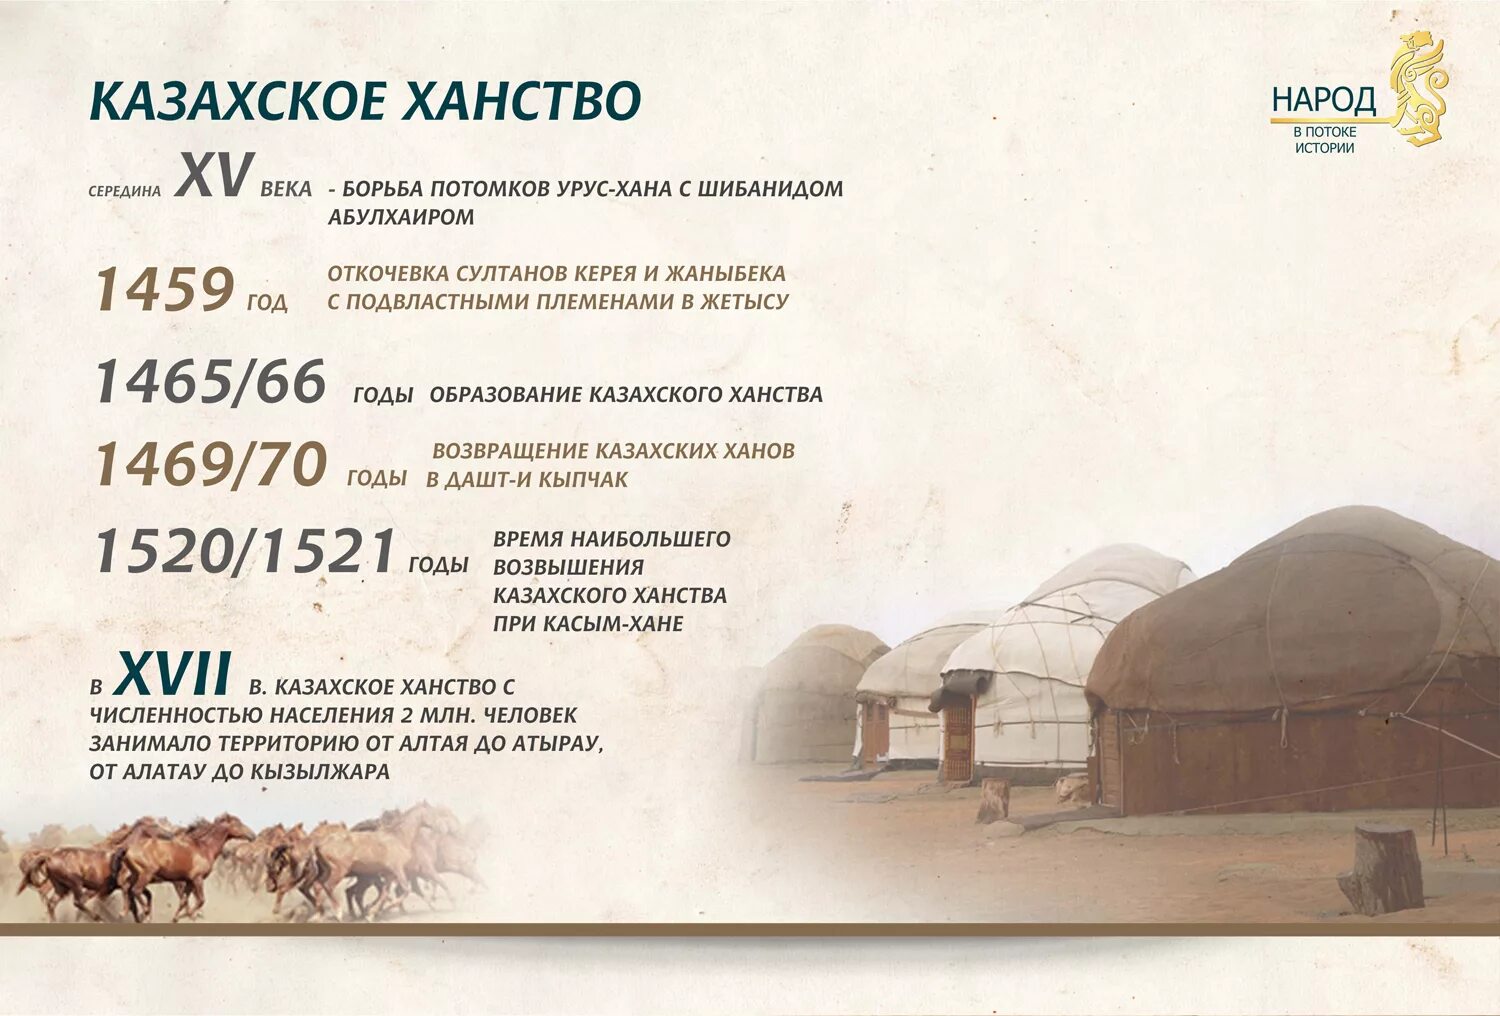 Образование казахского ханства. Год основания казахского ханства. Год образования казахского ханства. Когда образовалалось казахское ханство. Ханы история казахстана